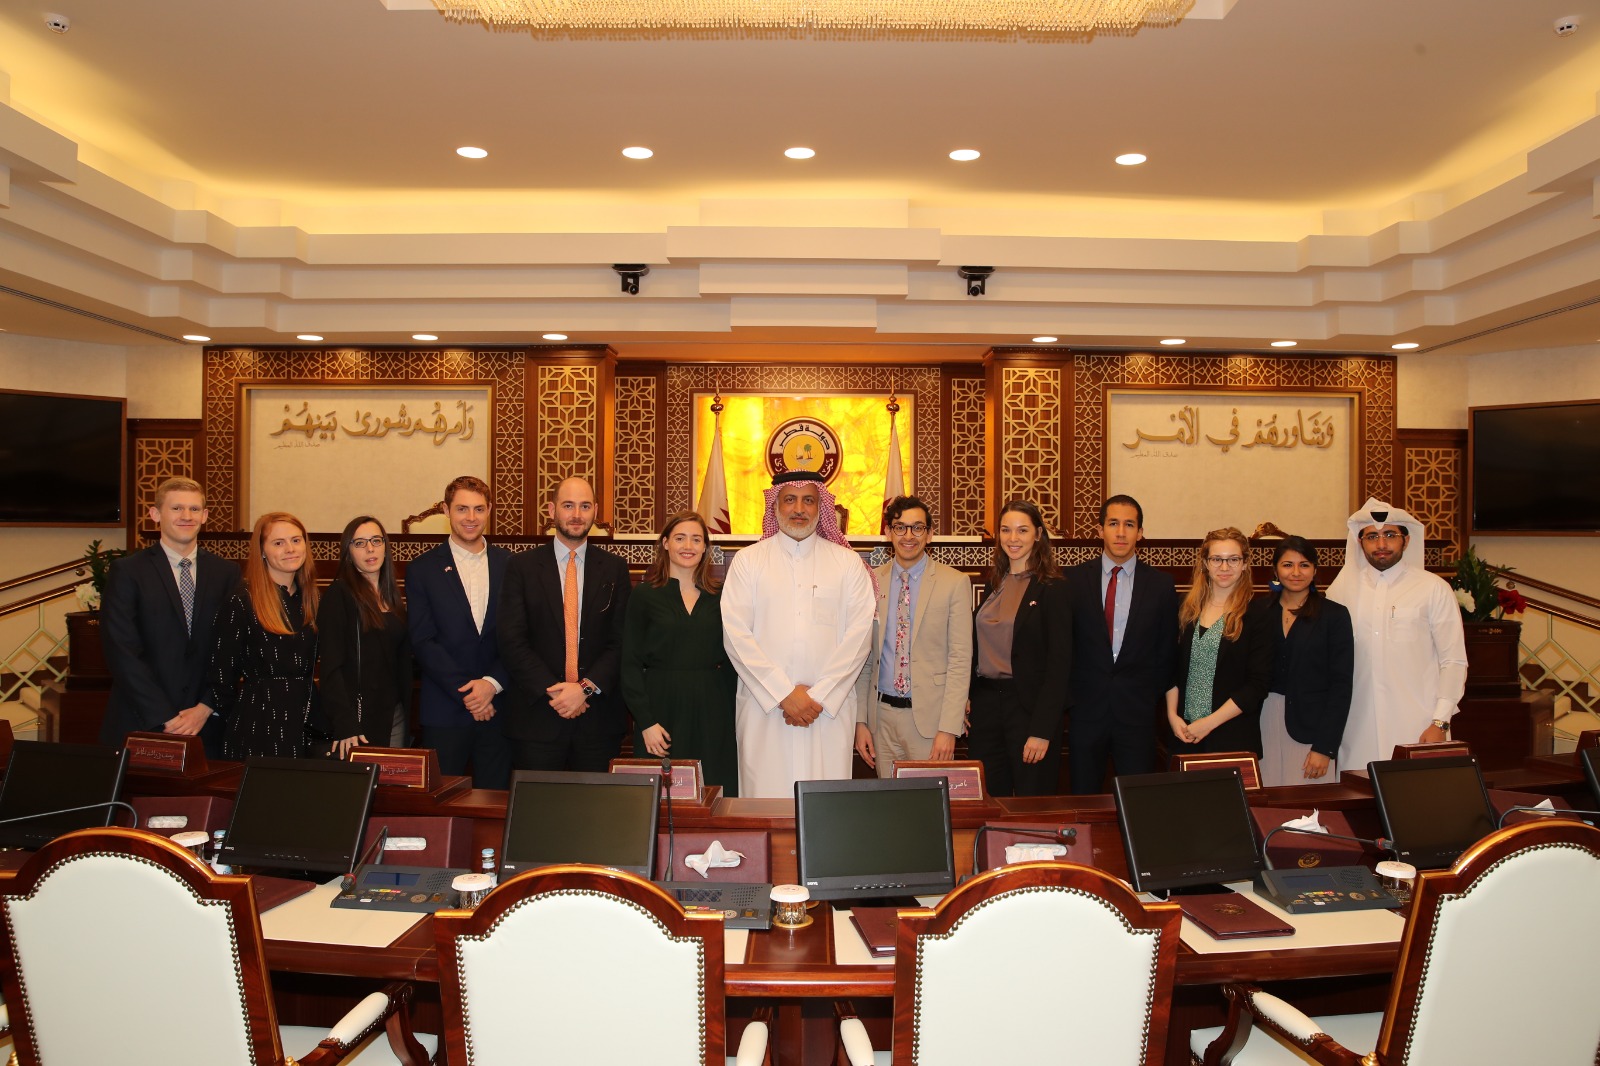 اجتمع سعادة السيد يوسف بن راشد الخاطر عضو مجلس الشورى اليوم، مع وفد من المجلس الأمريكي للقادة السياسيين الشباب